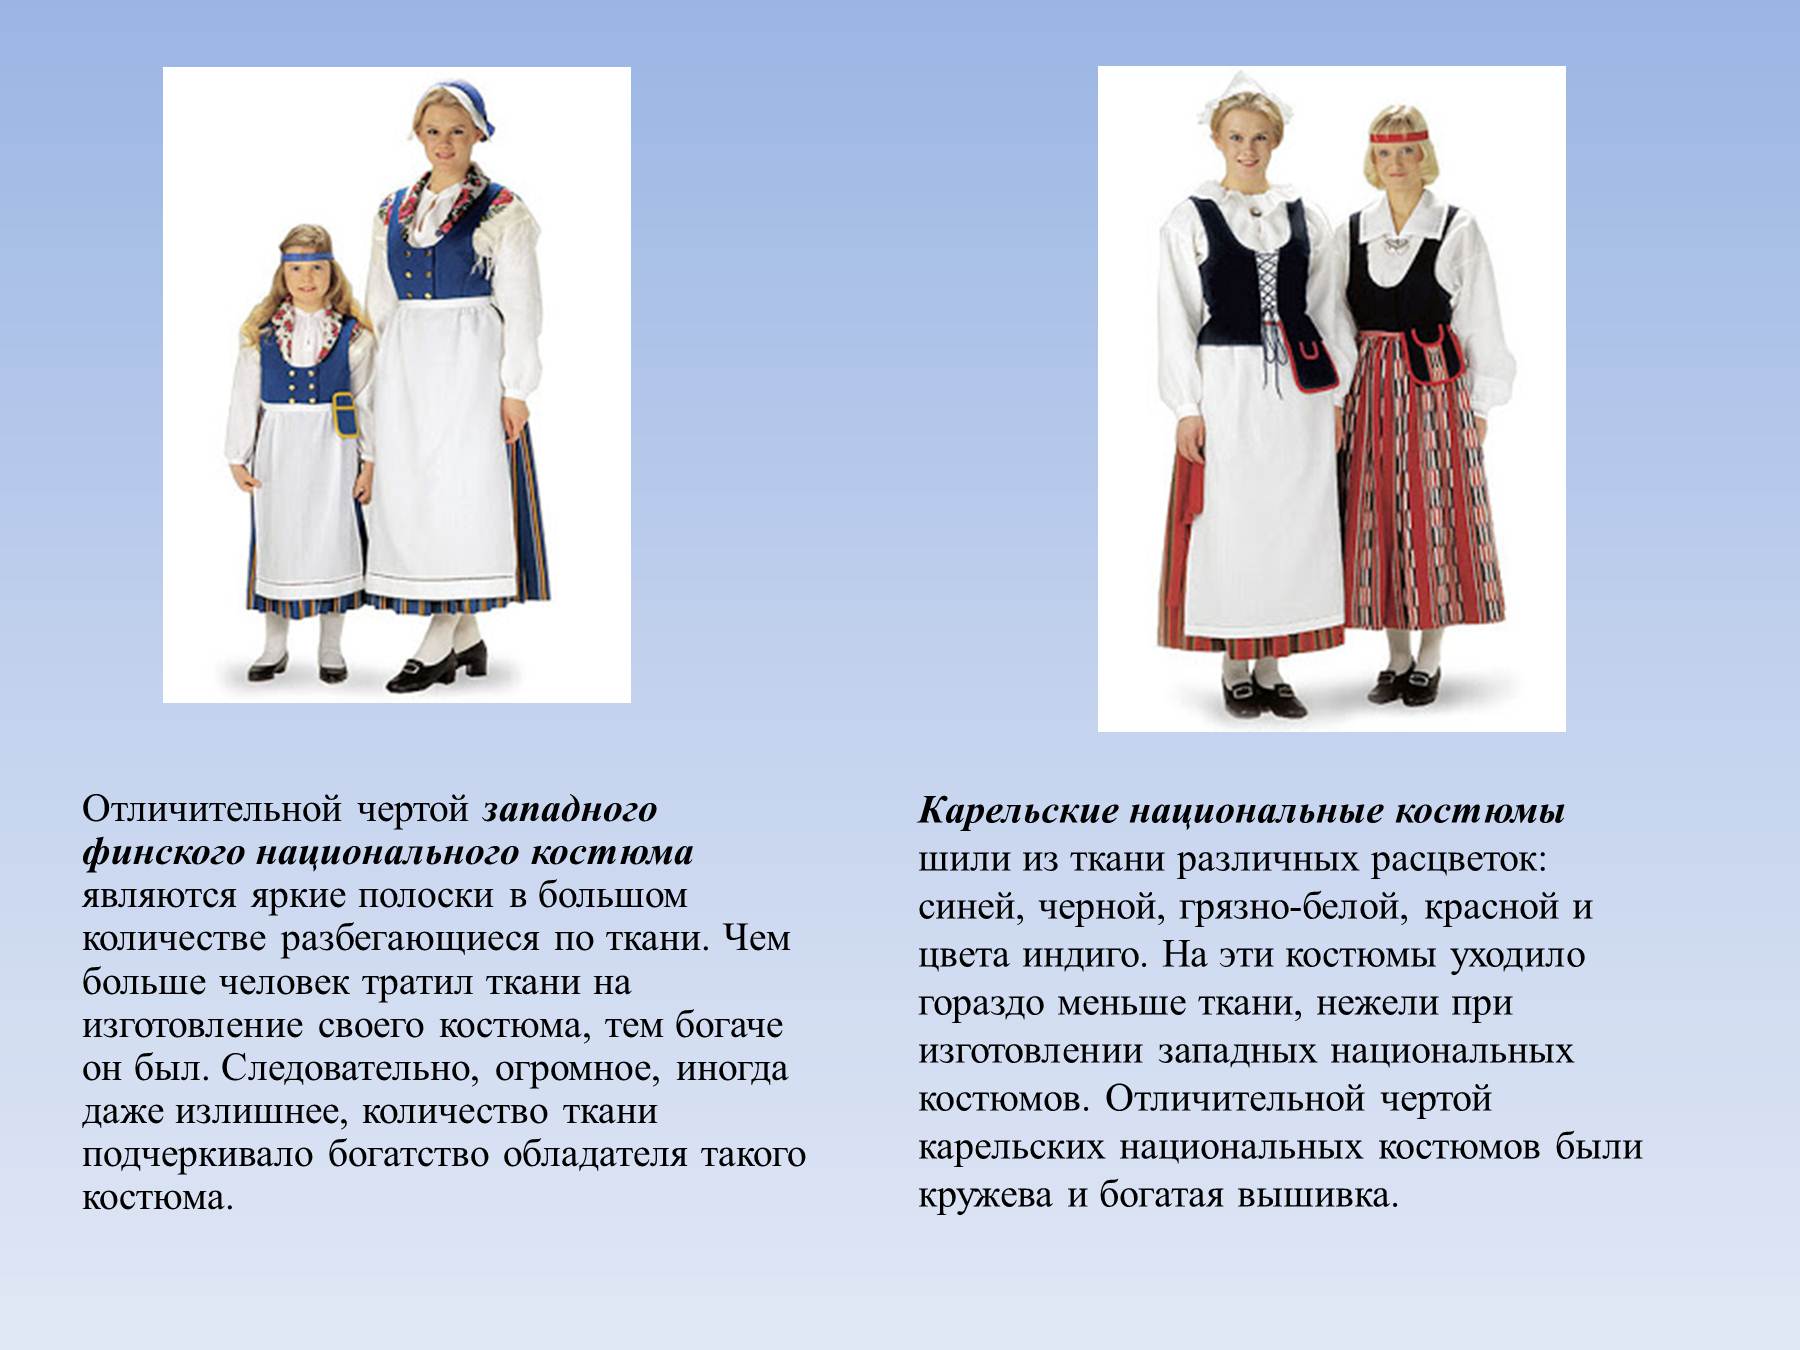 Финский национальный костюм описание